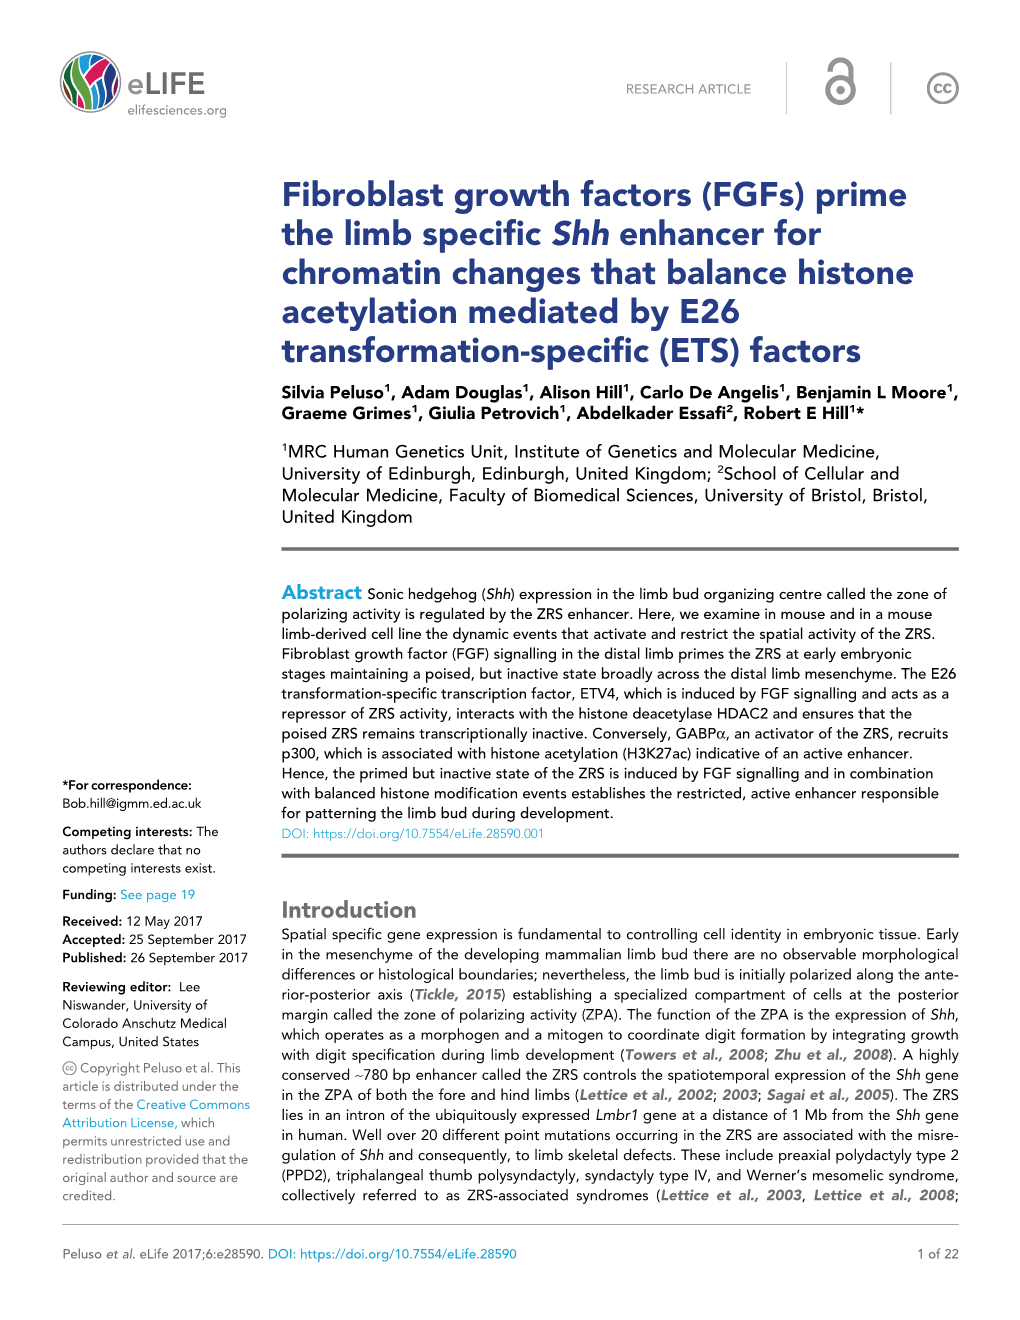 Fibroblast Growth Factors